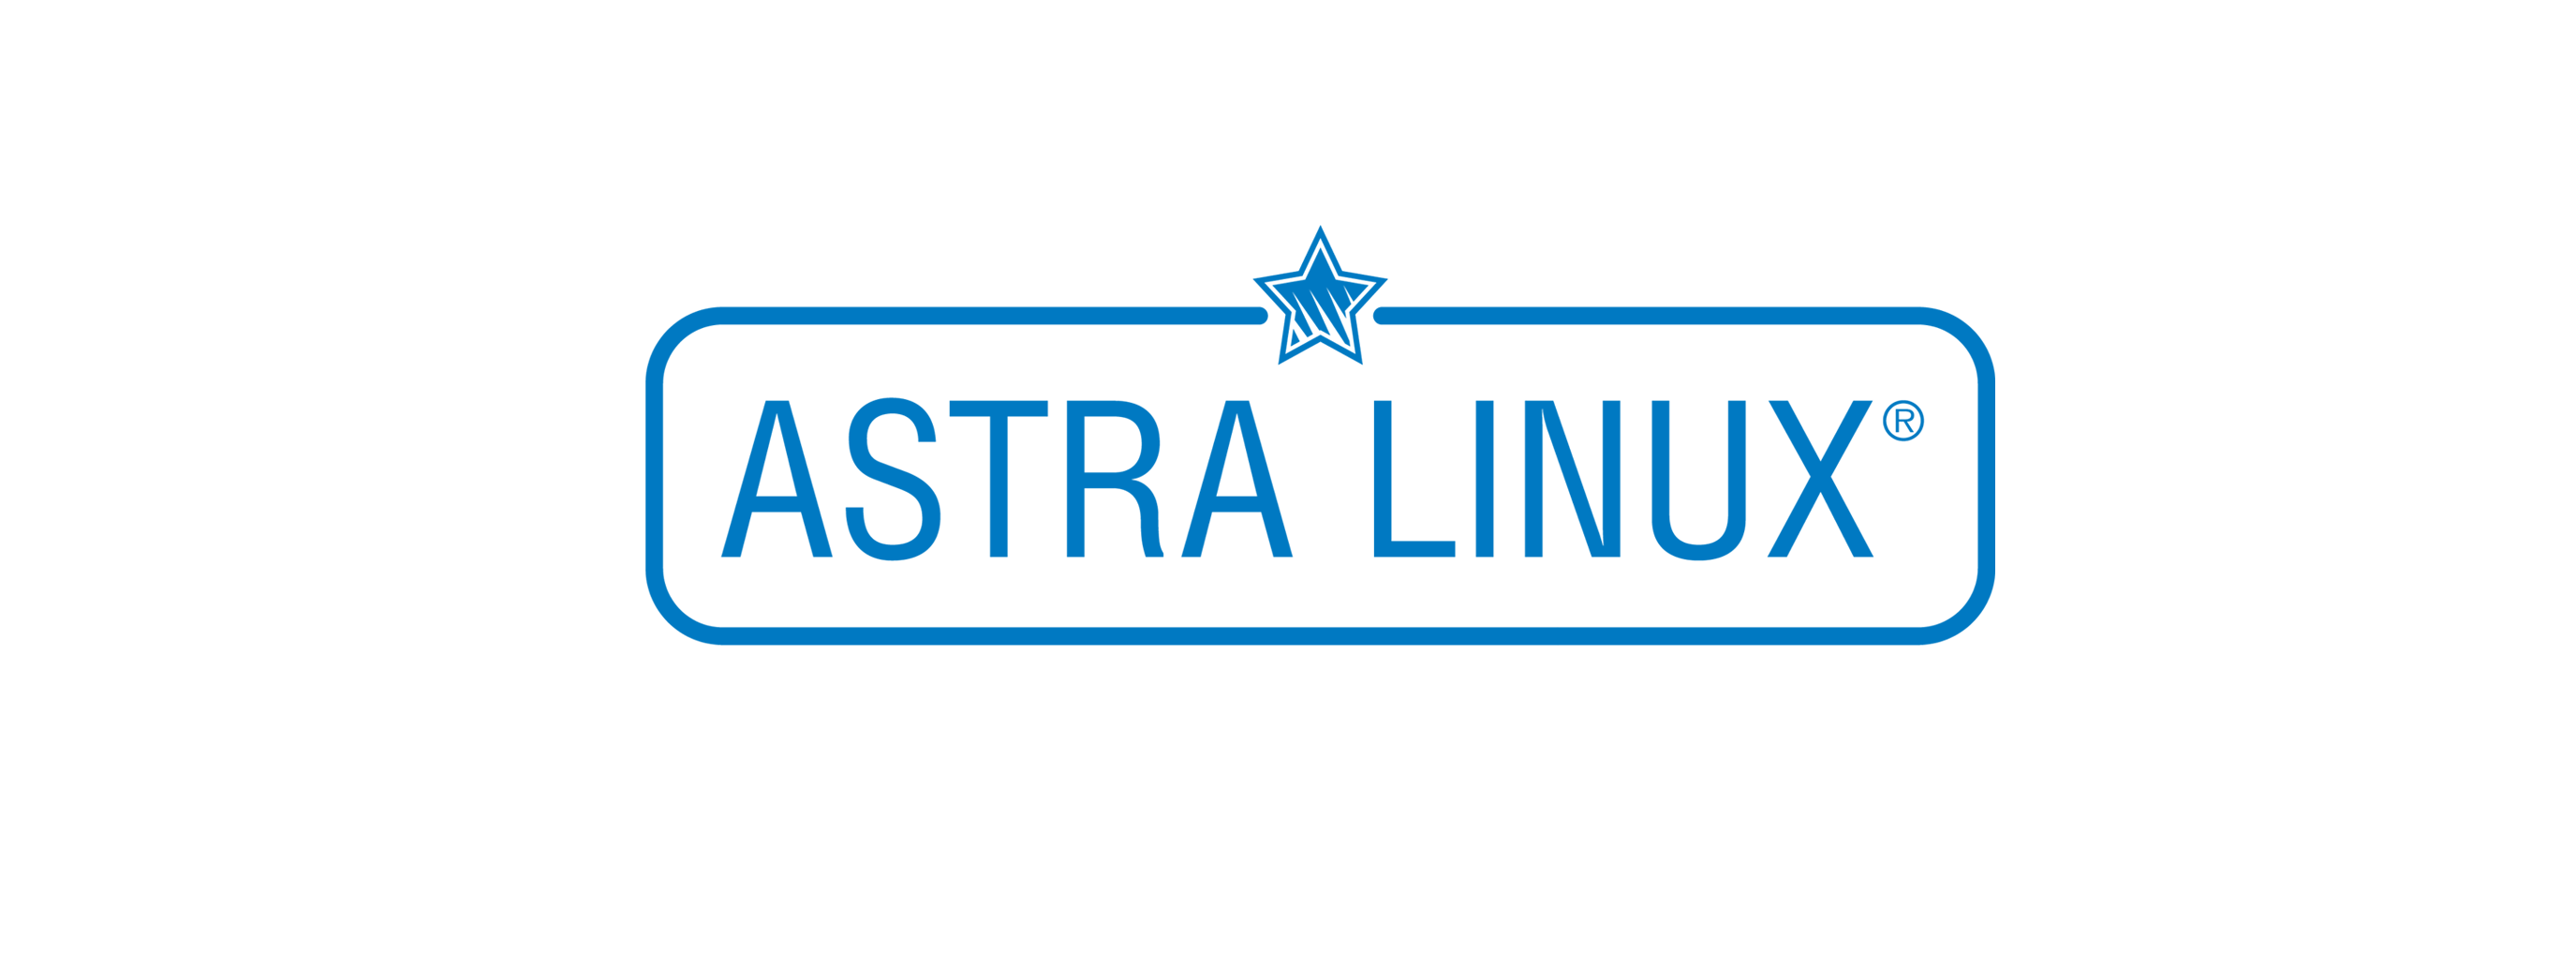 Лицензия РусБИТех Astra Linux Special Edition (очередное обновление 1.7), уровень защищенности Максимальный (Смоленск), РУСБ.10015-01 (МО), Russian, на срок действия исключительного права базовая лицензия для рабочей станции, диск (OS2102X8617DSK000WS01-PO12)